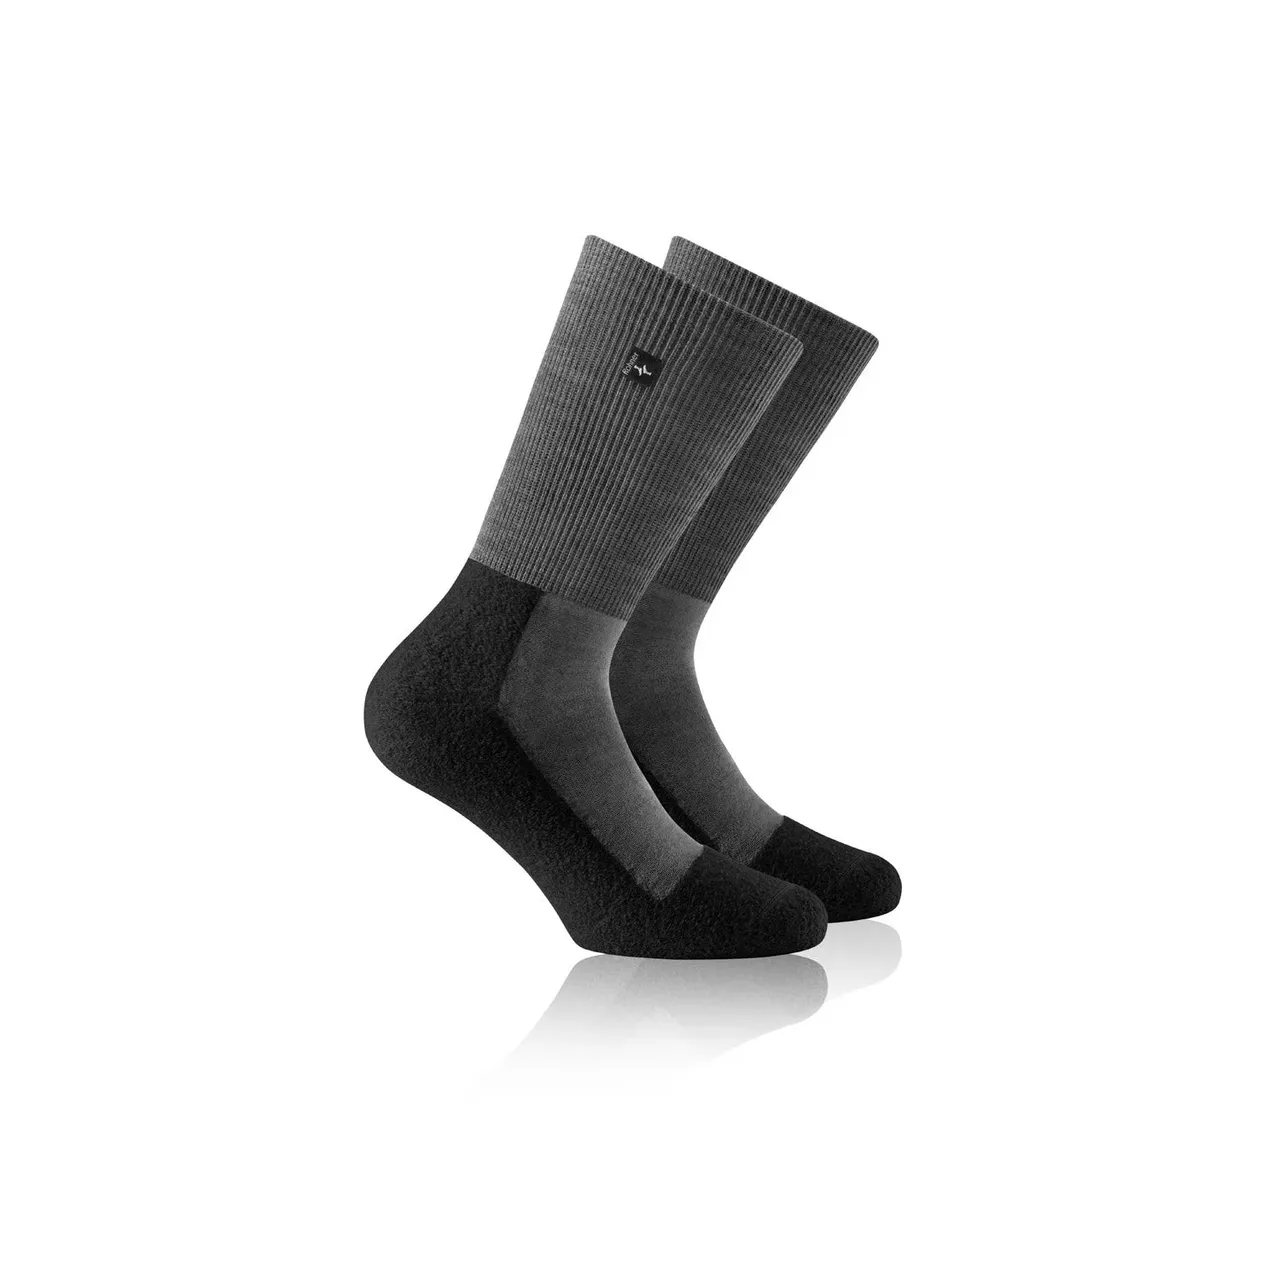 Rohner Oiginal SupeR Light Socken schwarz-grau